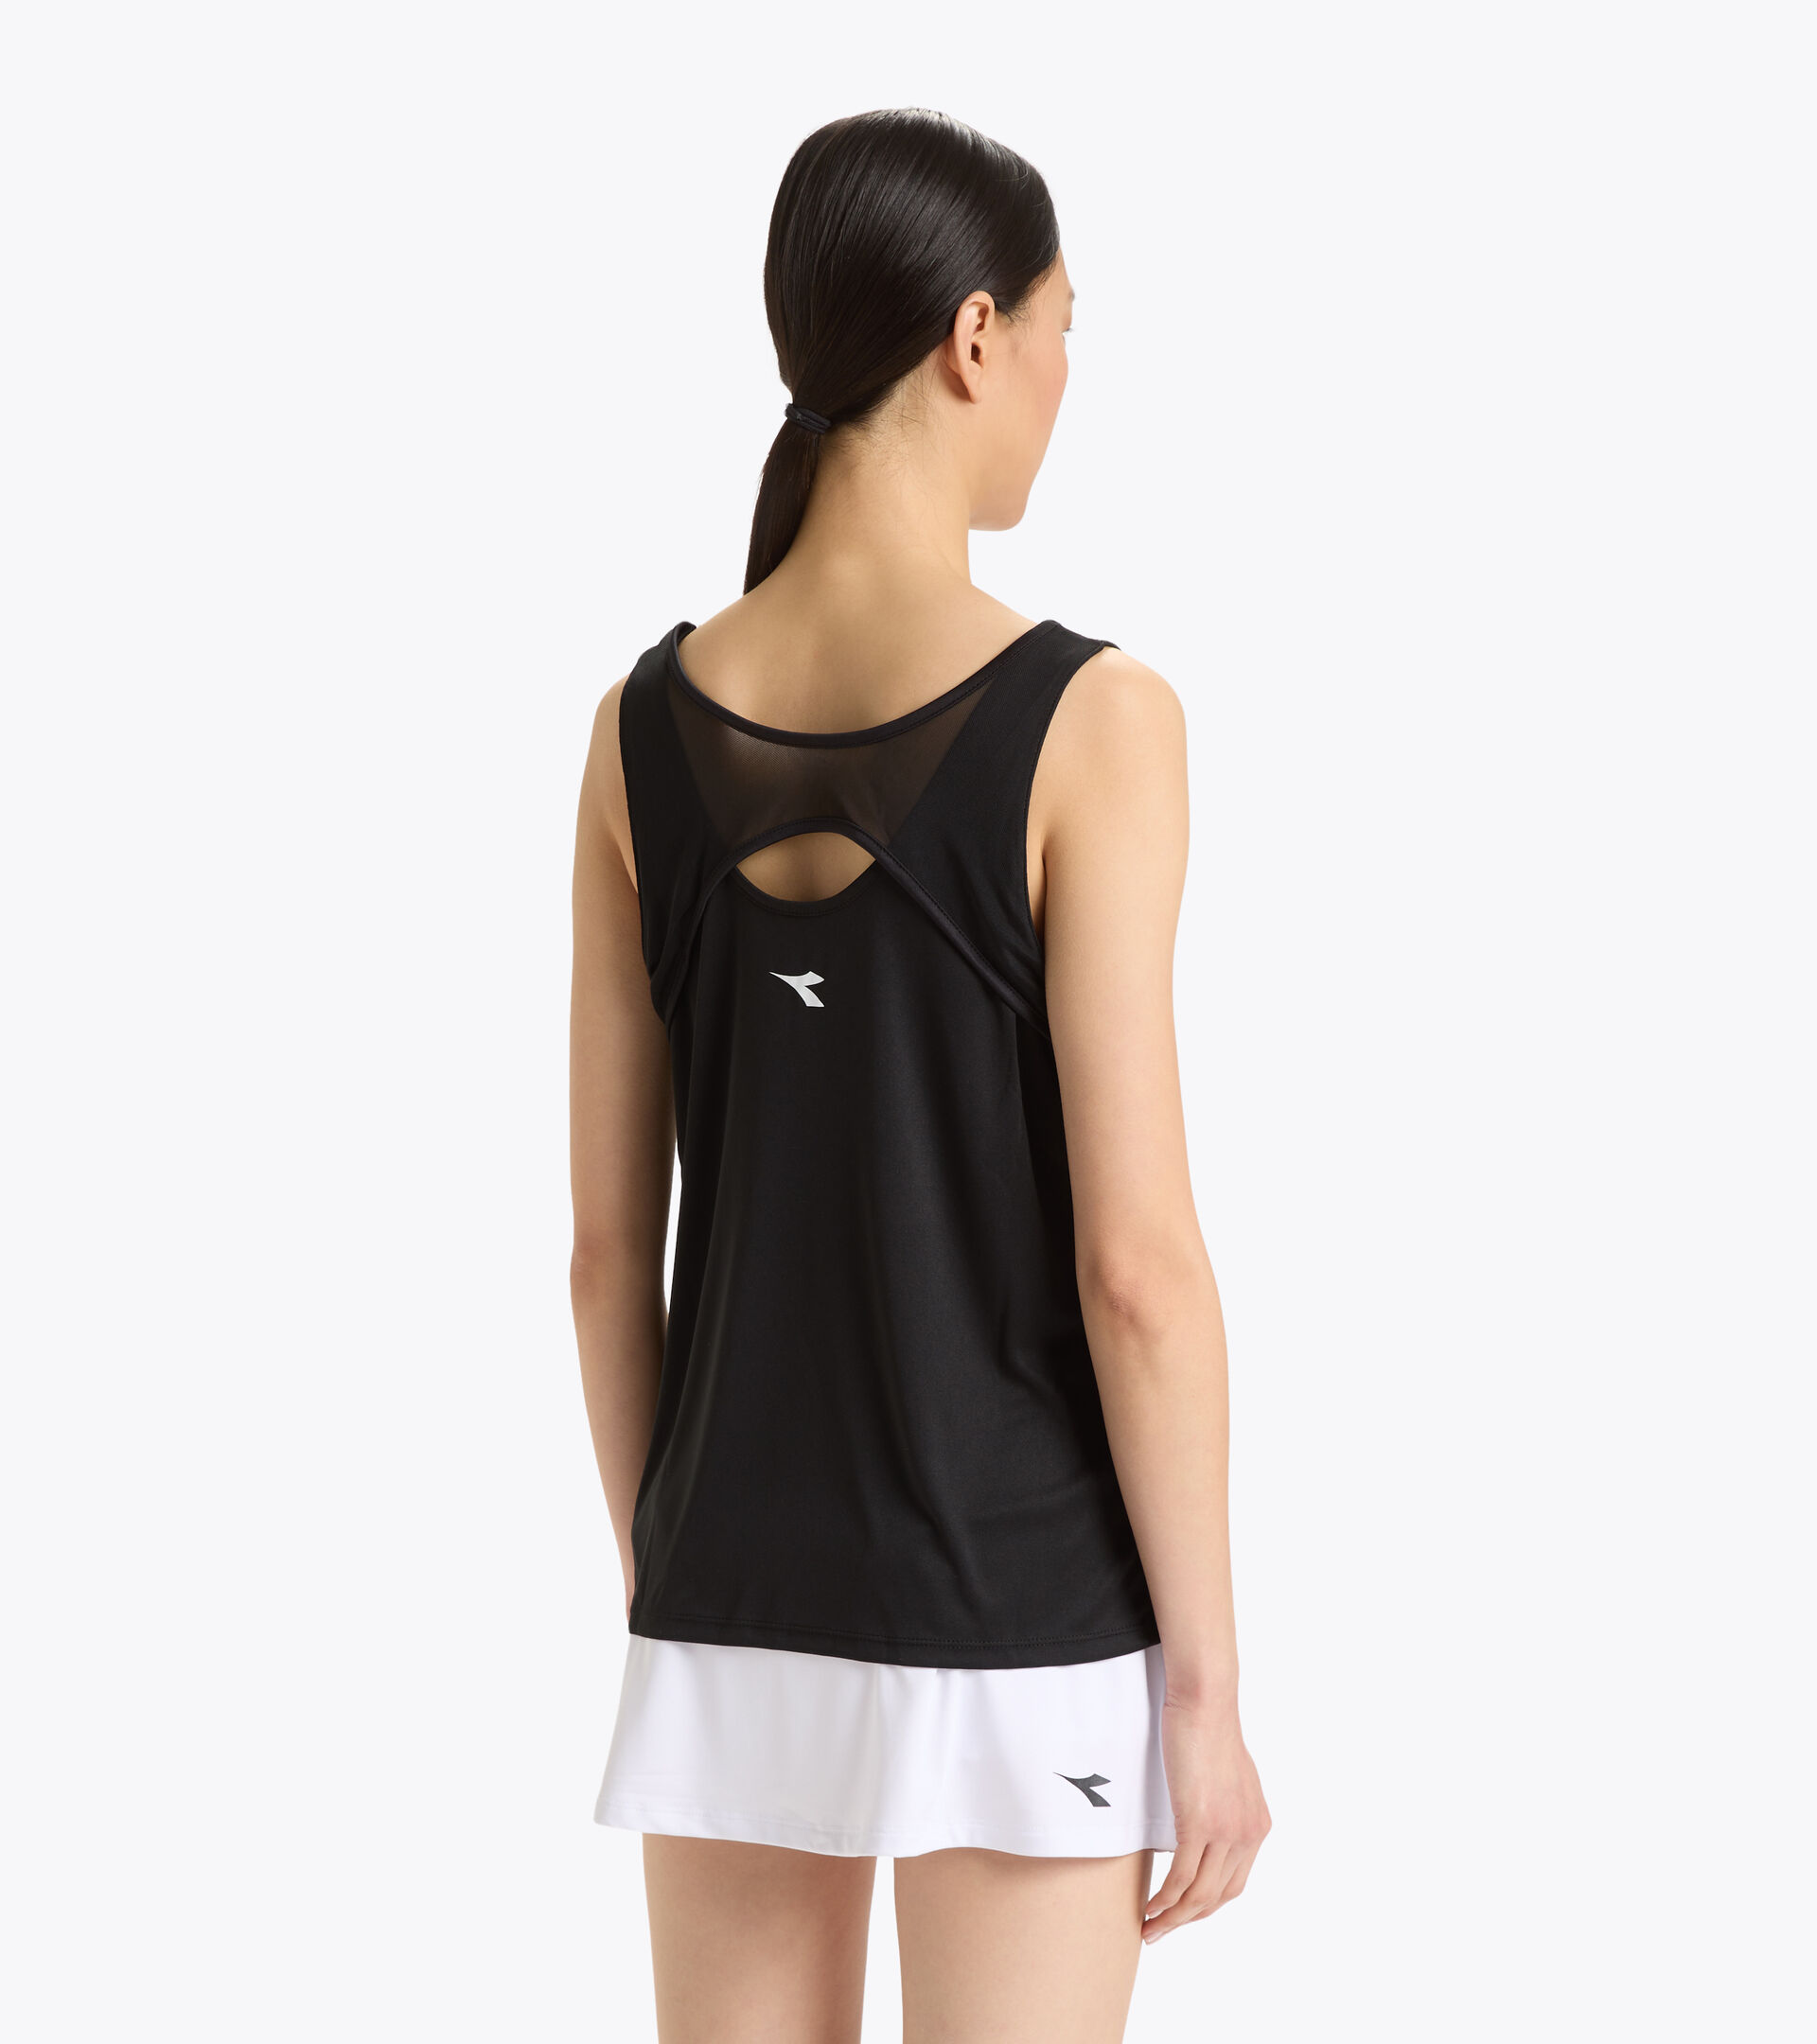 Tennis vest top - Women L. CORE TANK BLACK - Diadora